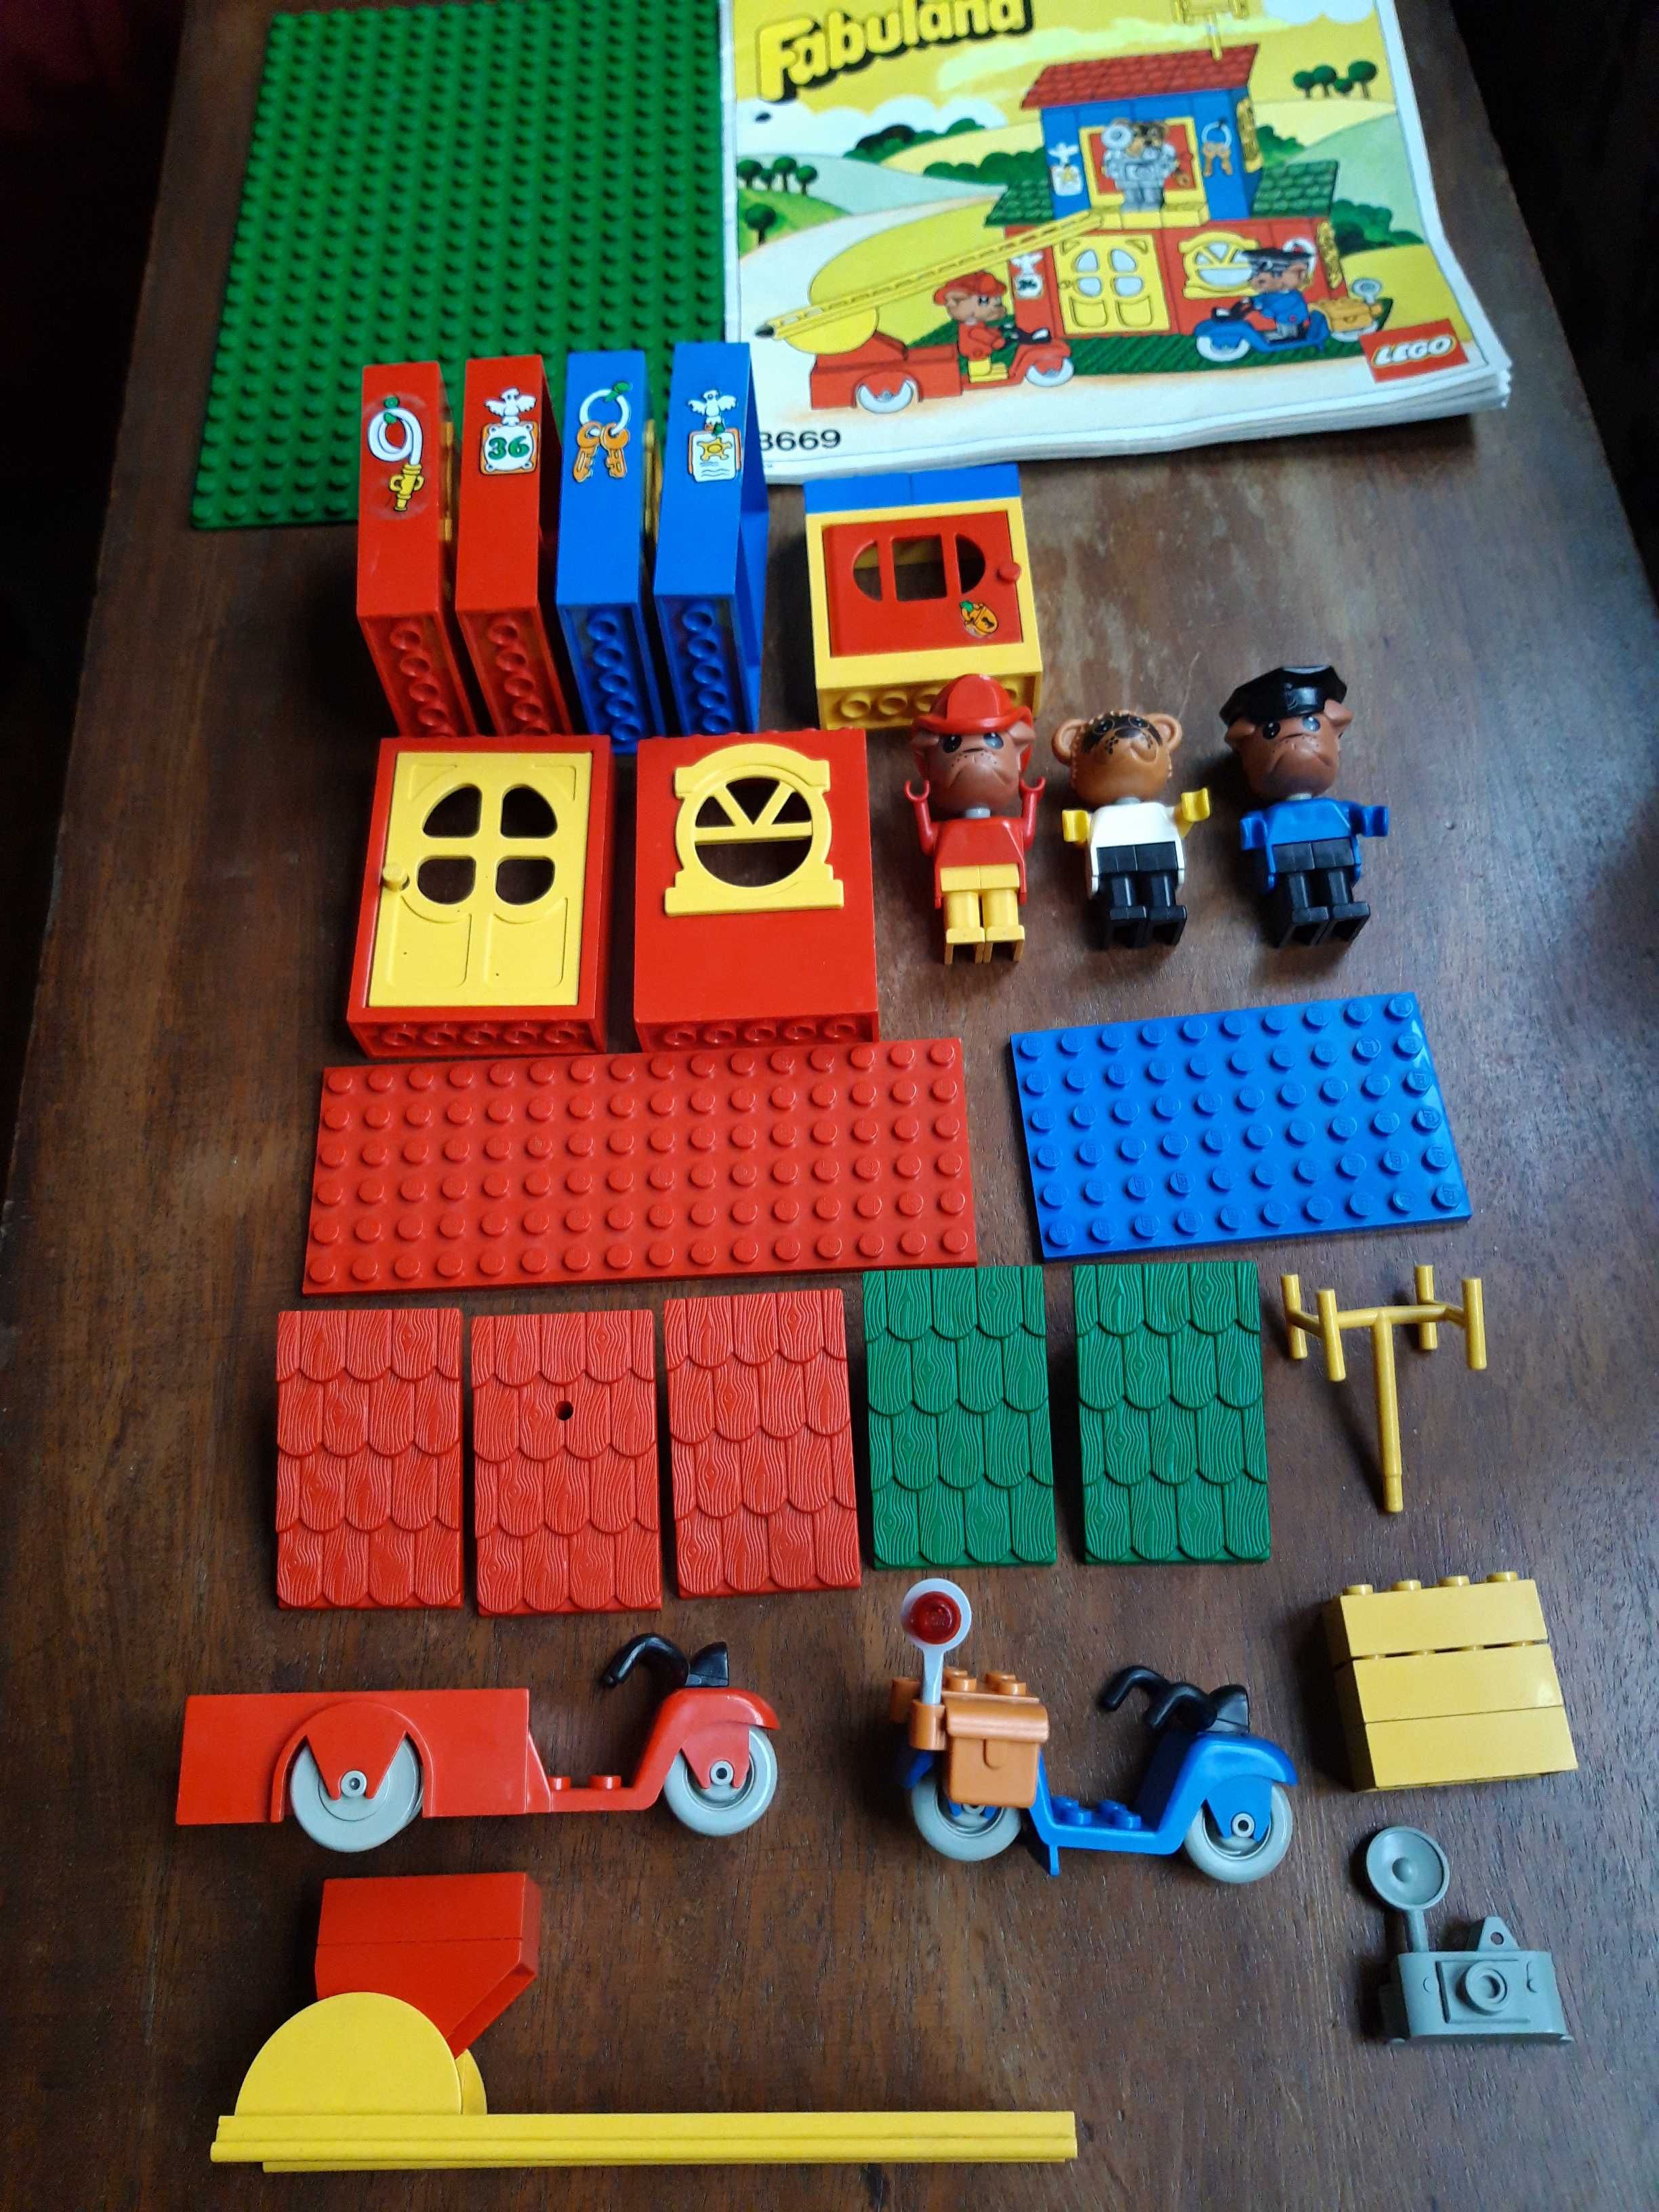 Lego Fabuland 3669